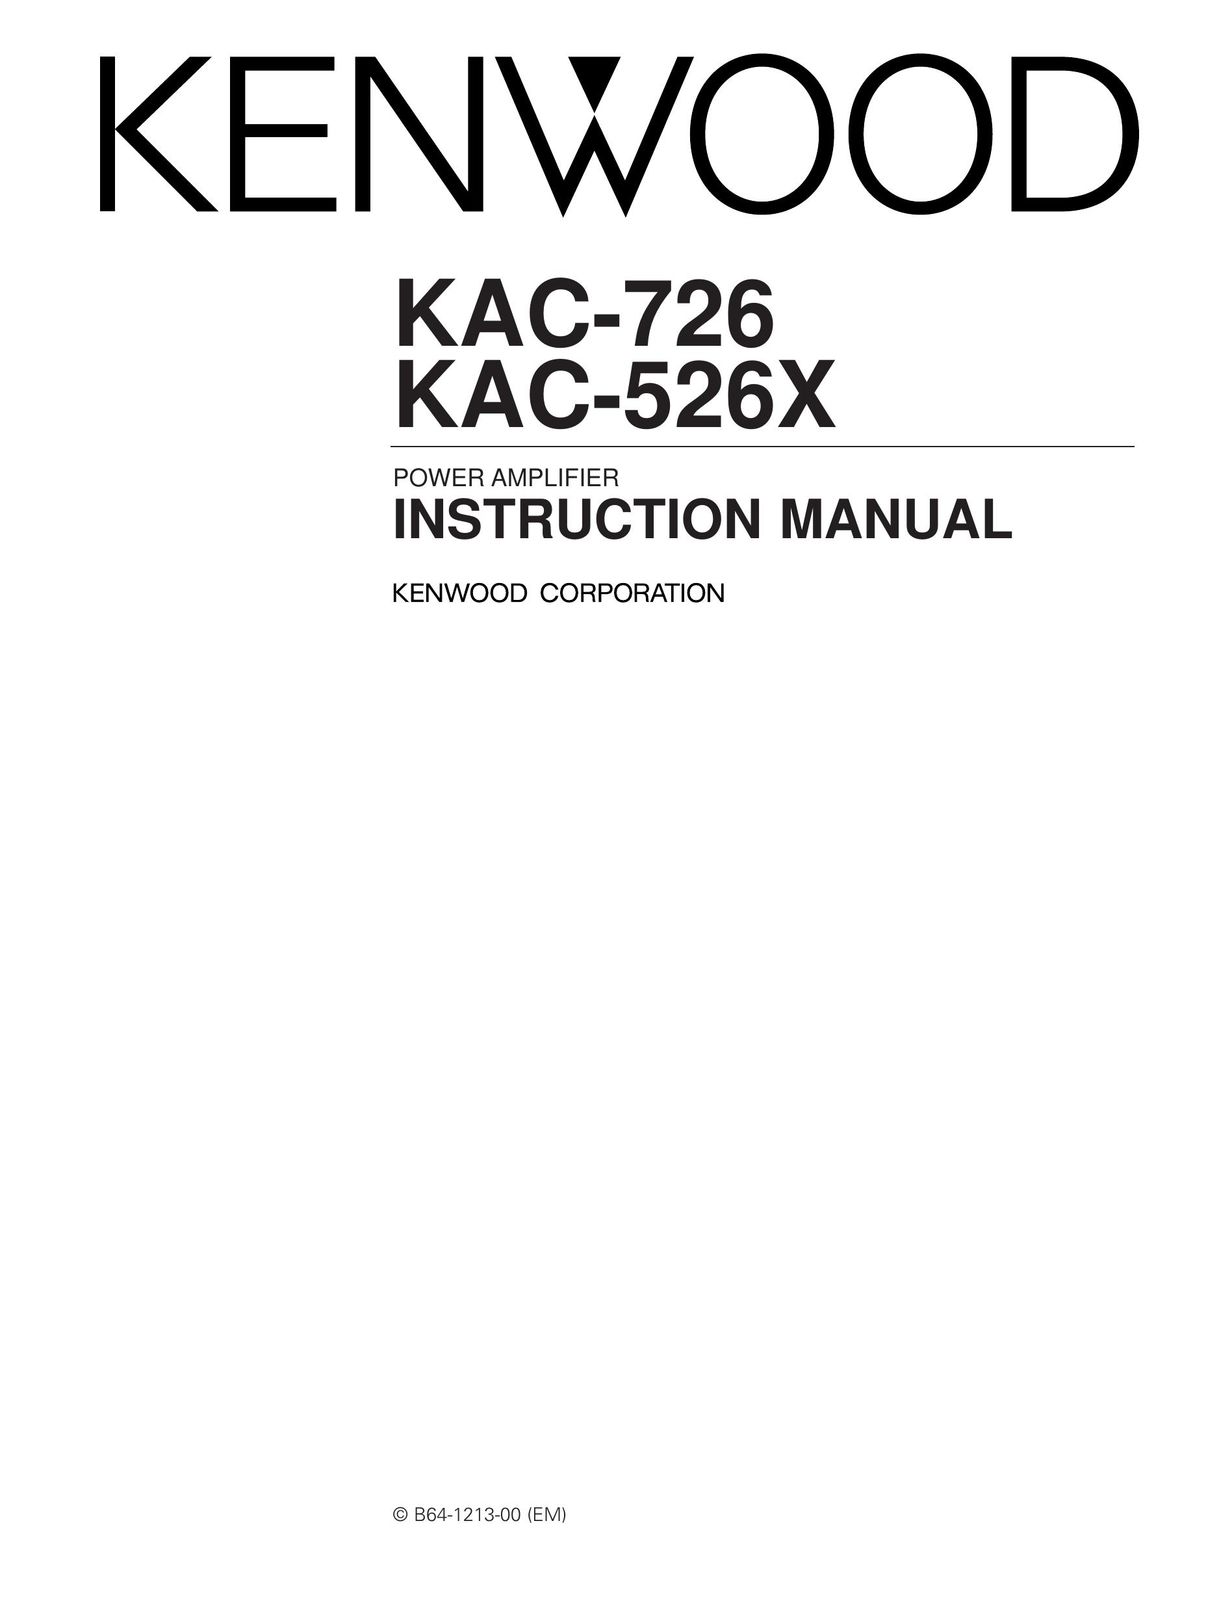 Kenwood KAC-526X Car Amplifier User Manual